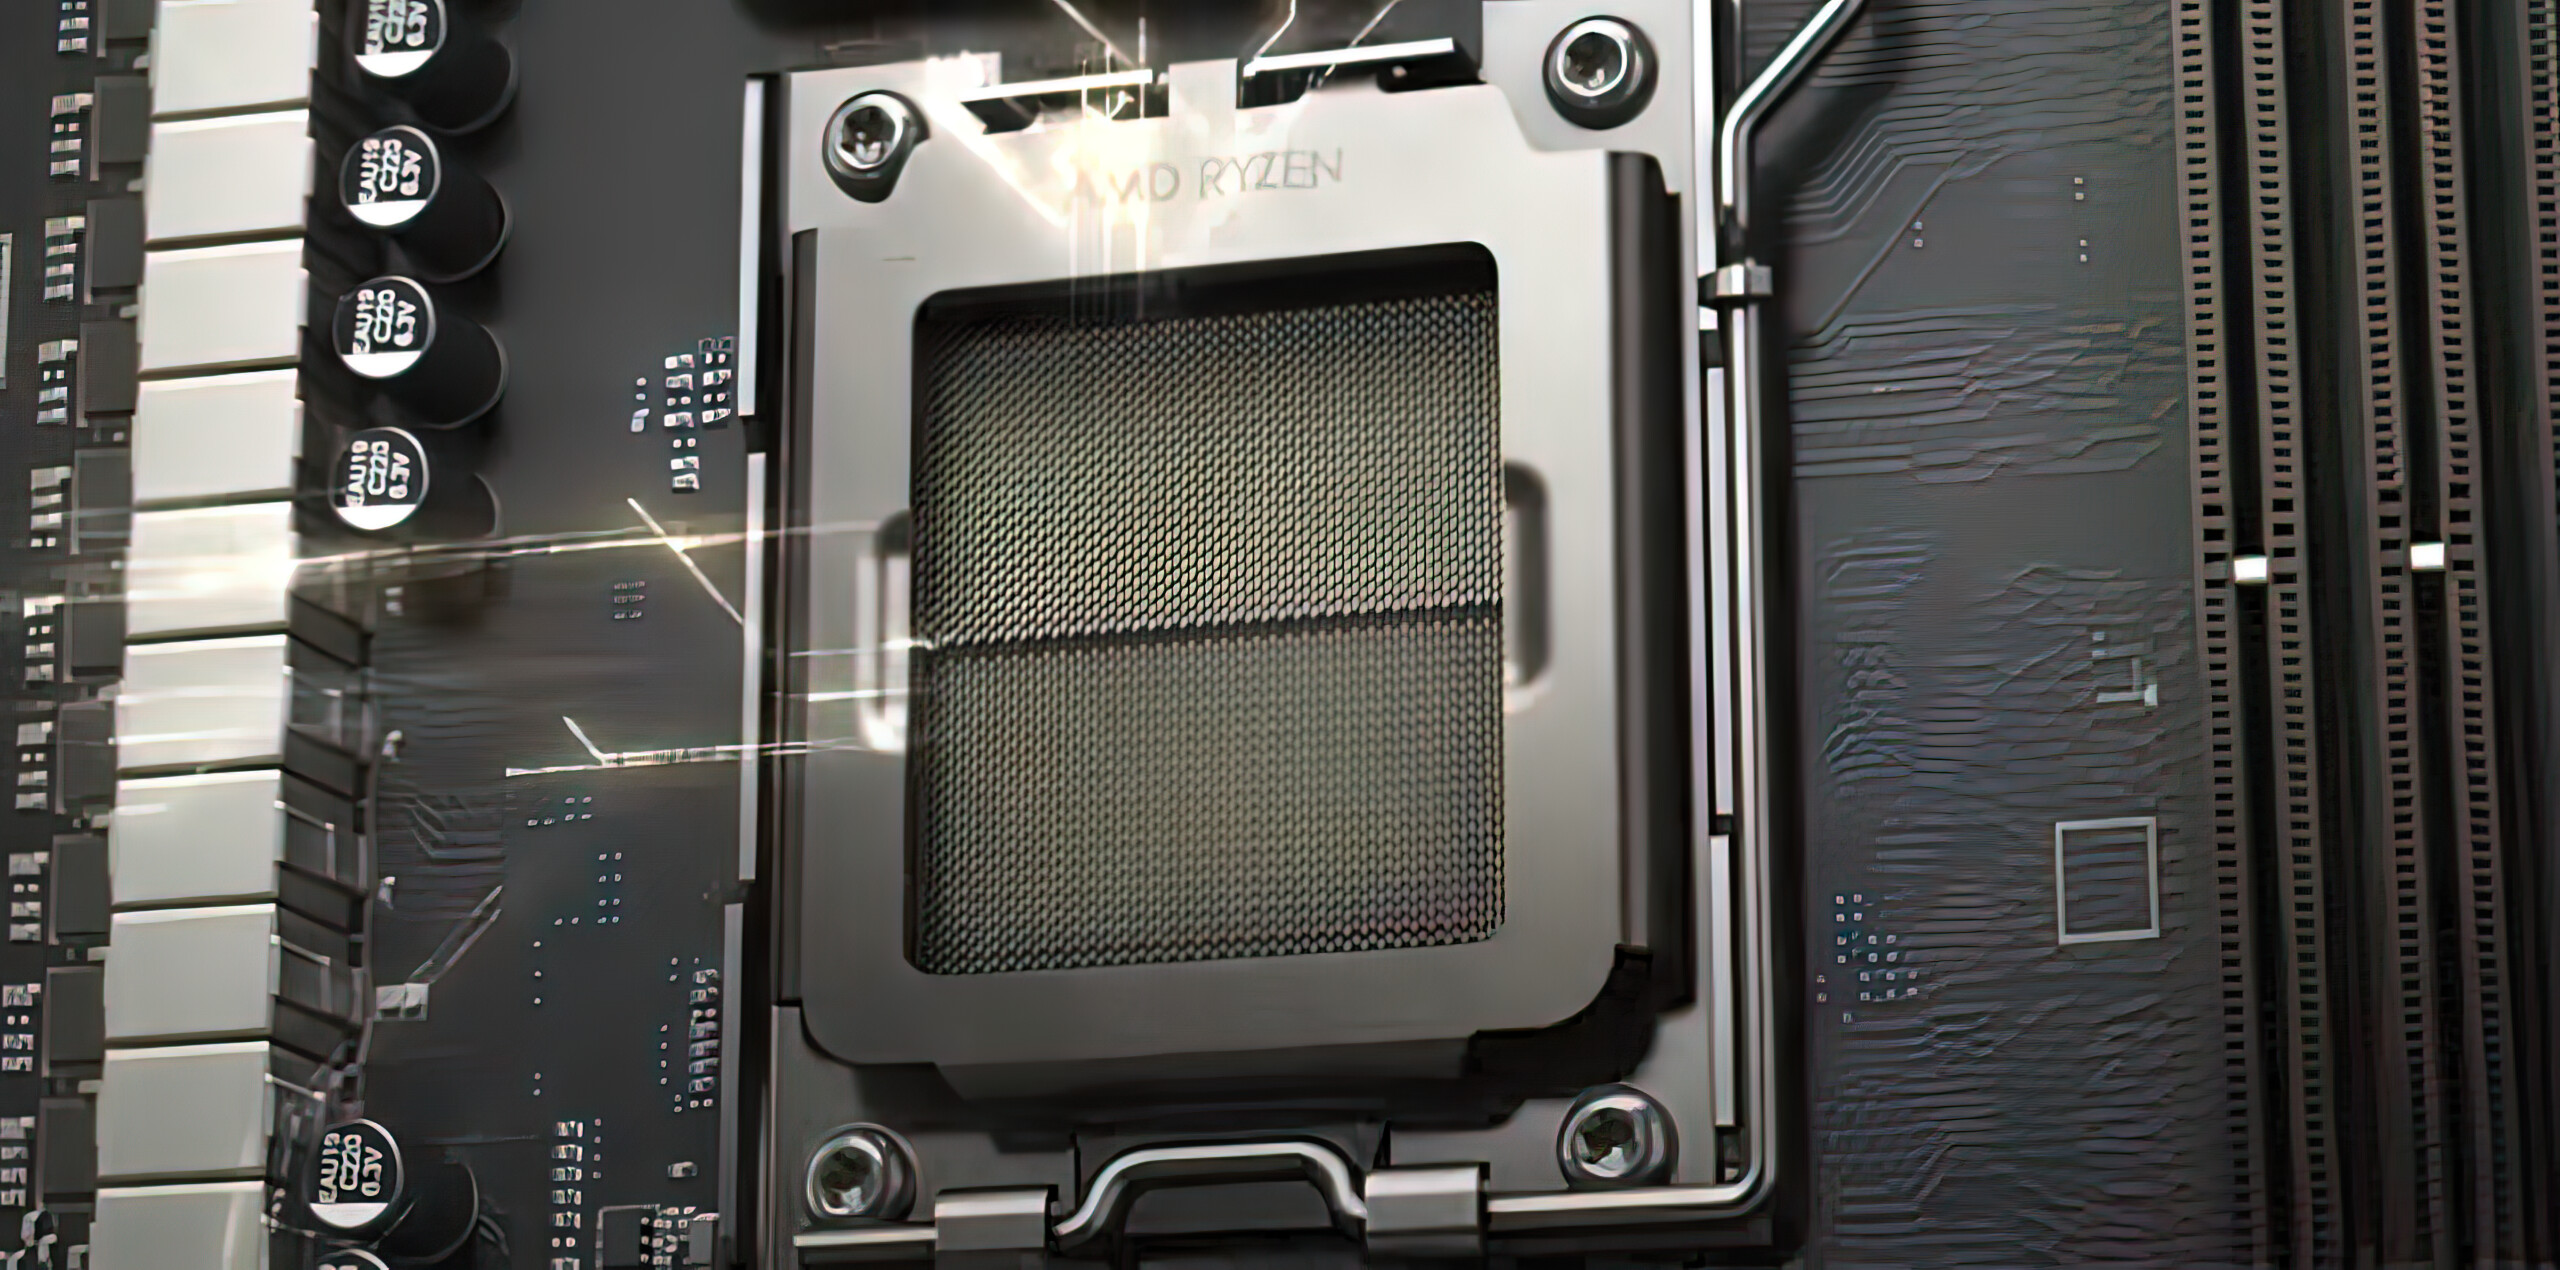 AMD RYZEN 7 5800X 3D 4.50GHZ 8 CORE SKT AM4 96MB 105W WOF CHIP